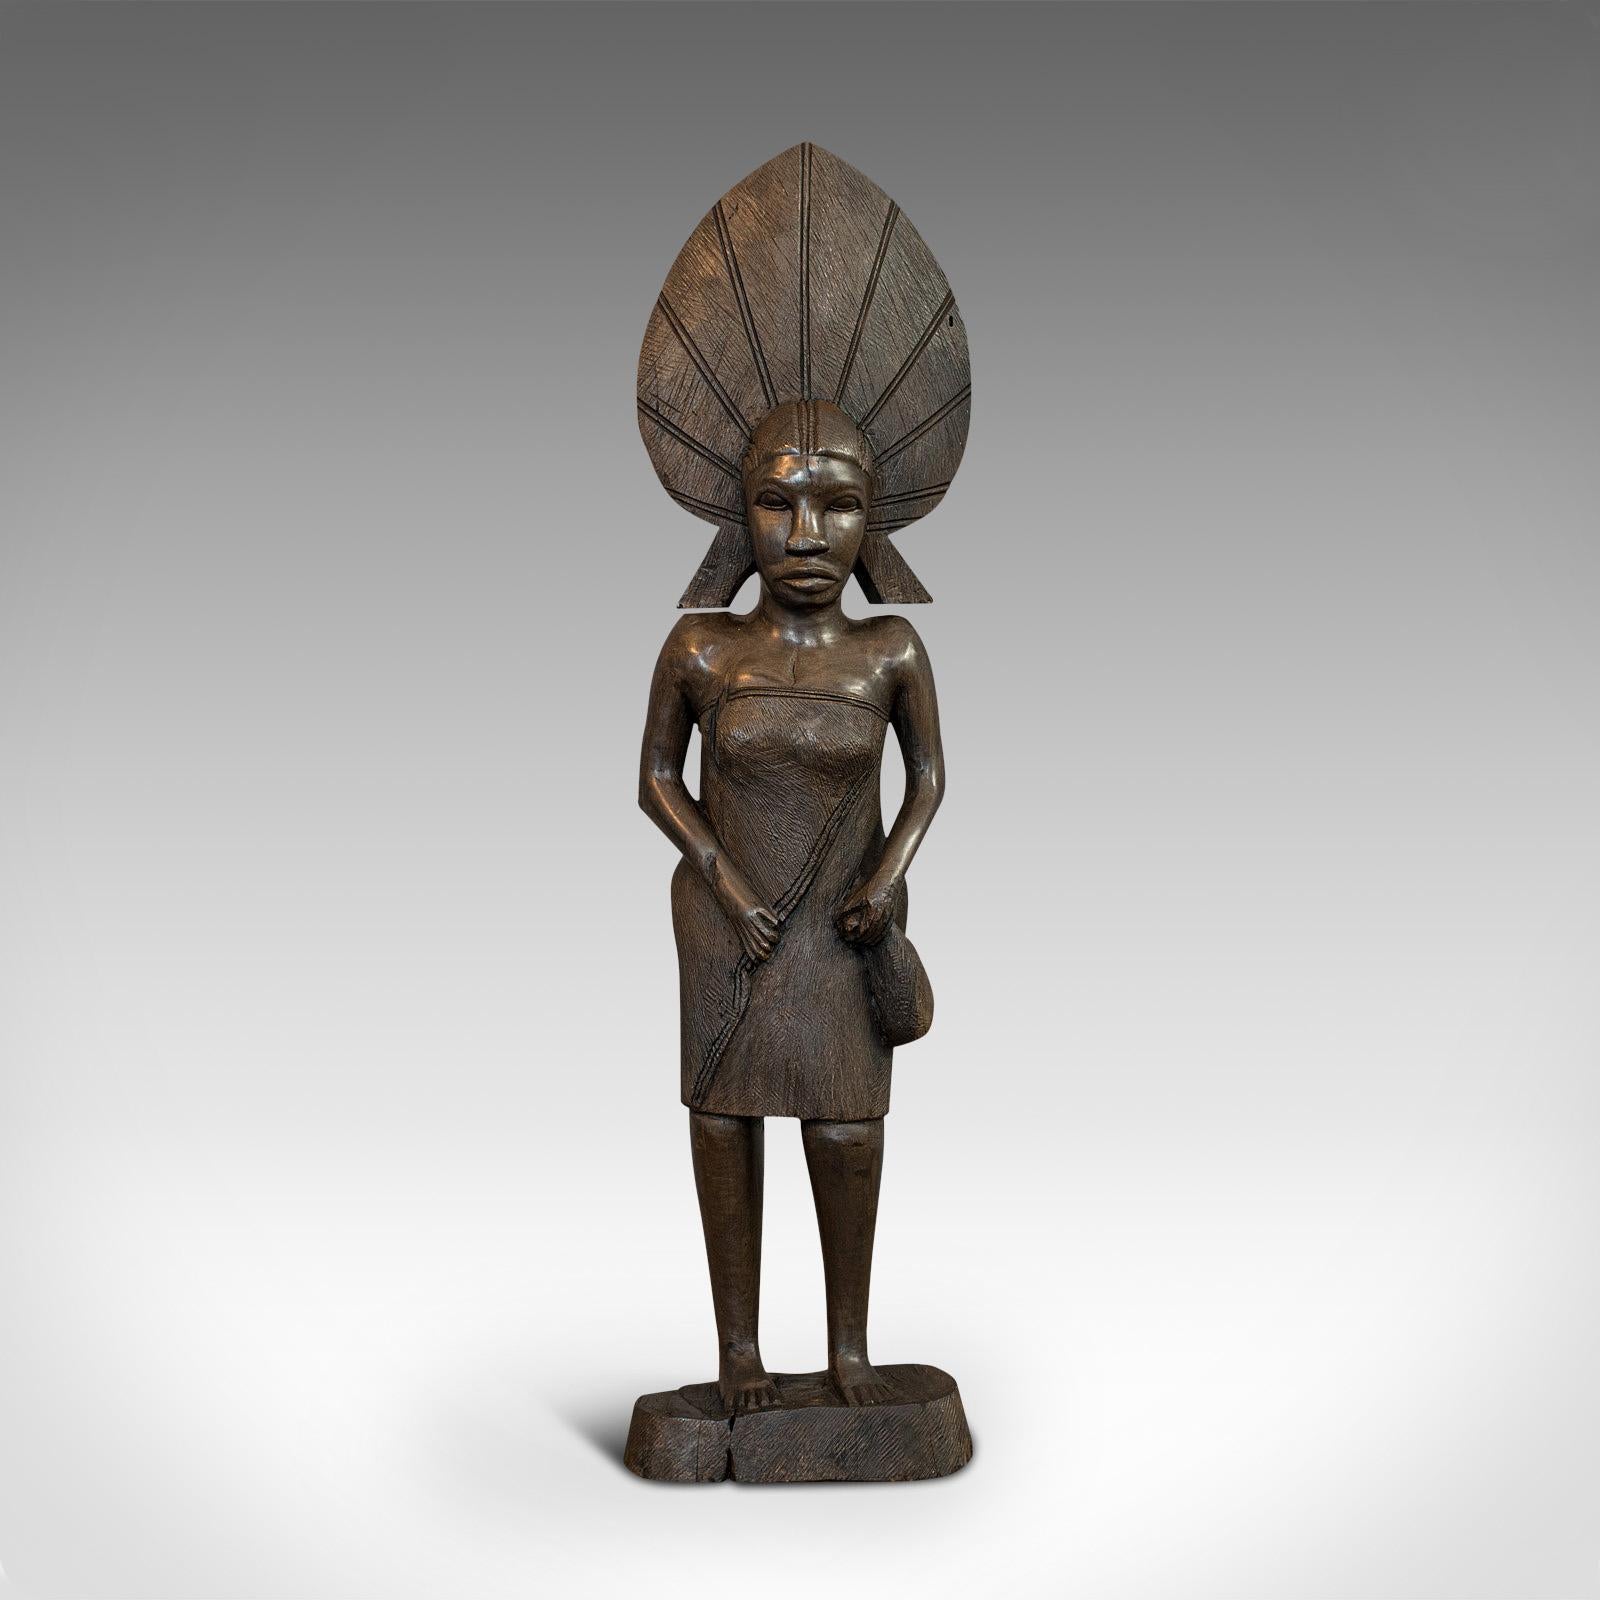 Il s'agit d'une statue féminine antique. Figurine tribale africaine en ébène massif sculptée à la main, datant de la fin du XIXe siècle, vers 1900.

Fascinant art africain du début du siècle
Présente une patine vieillie très recherchée.
Fabriqué